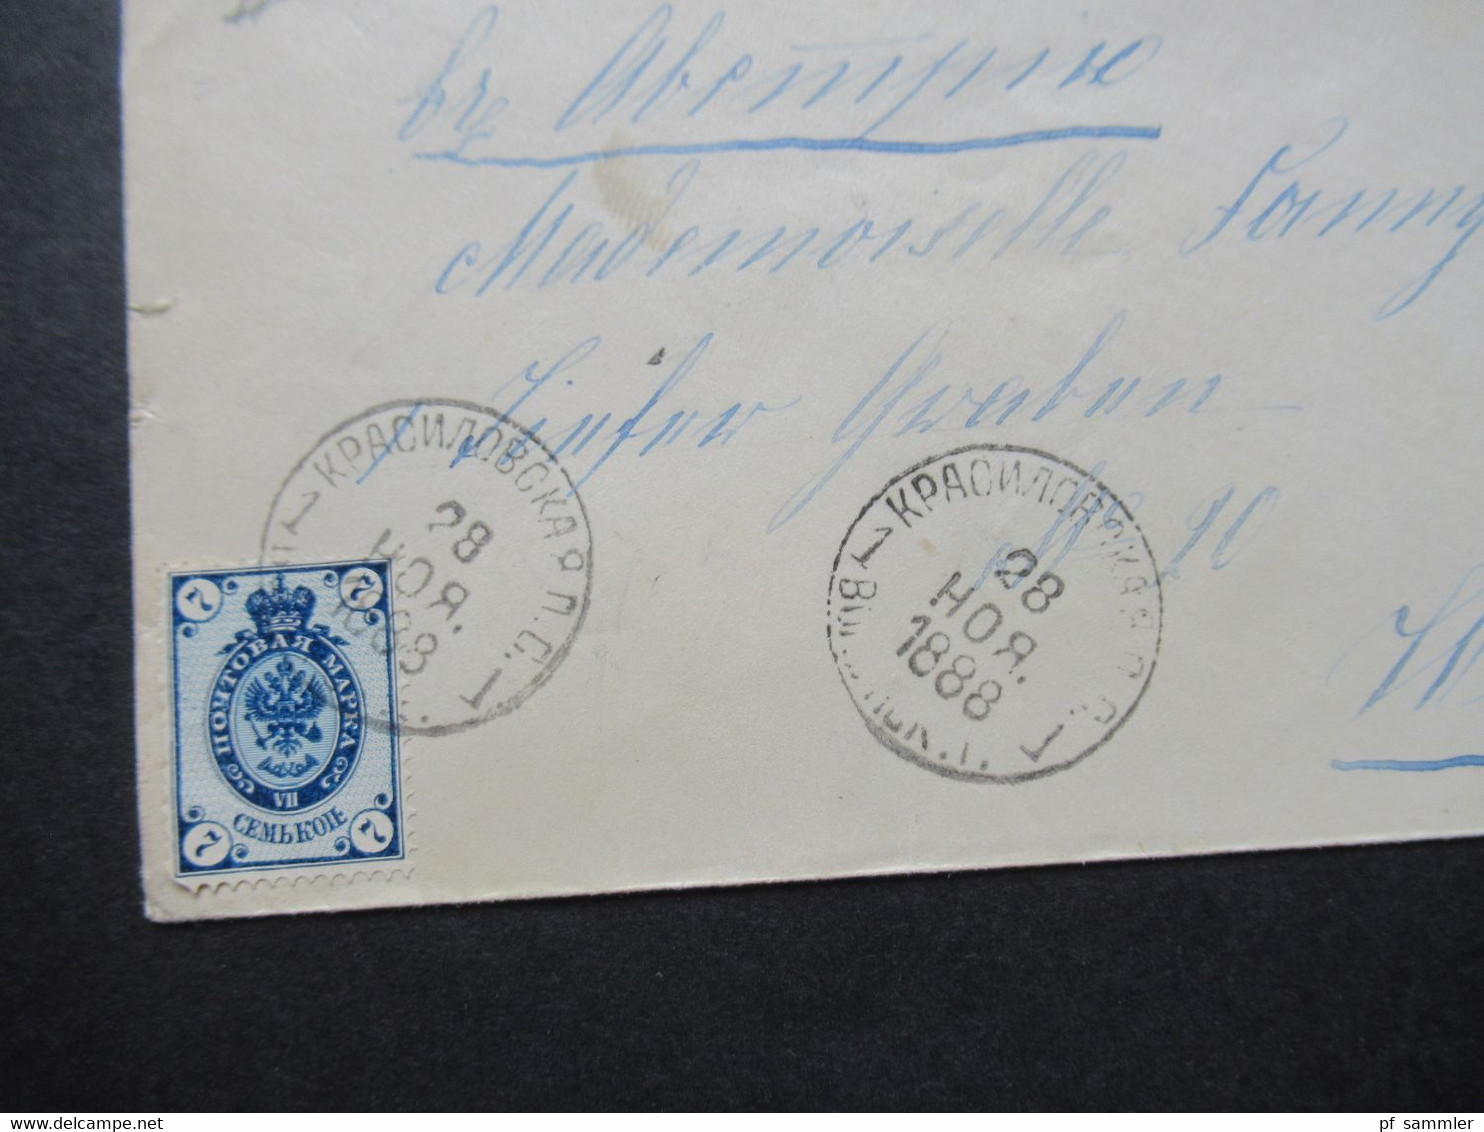 Russland 1888 Kleiner Umschlag Mit Zwei Stempeln Und Michel Nr.33 Auslandsbrief Nach Wien Gesendet - Covers & Documents